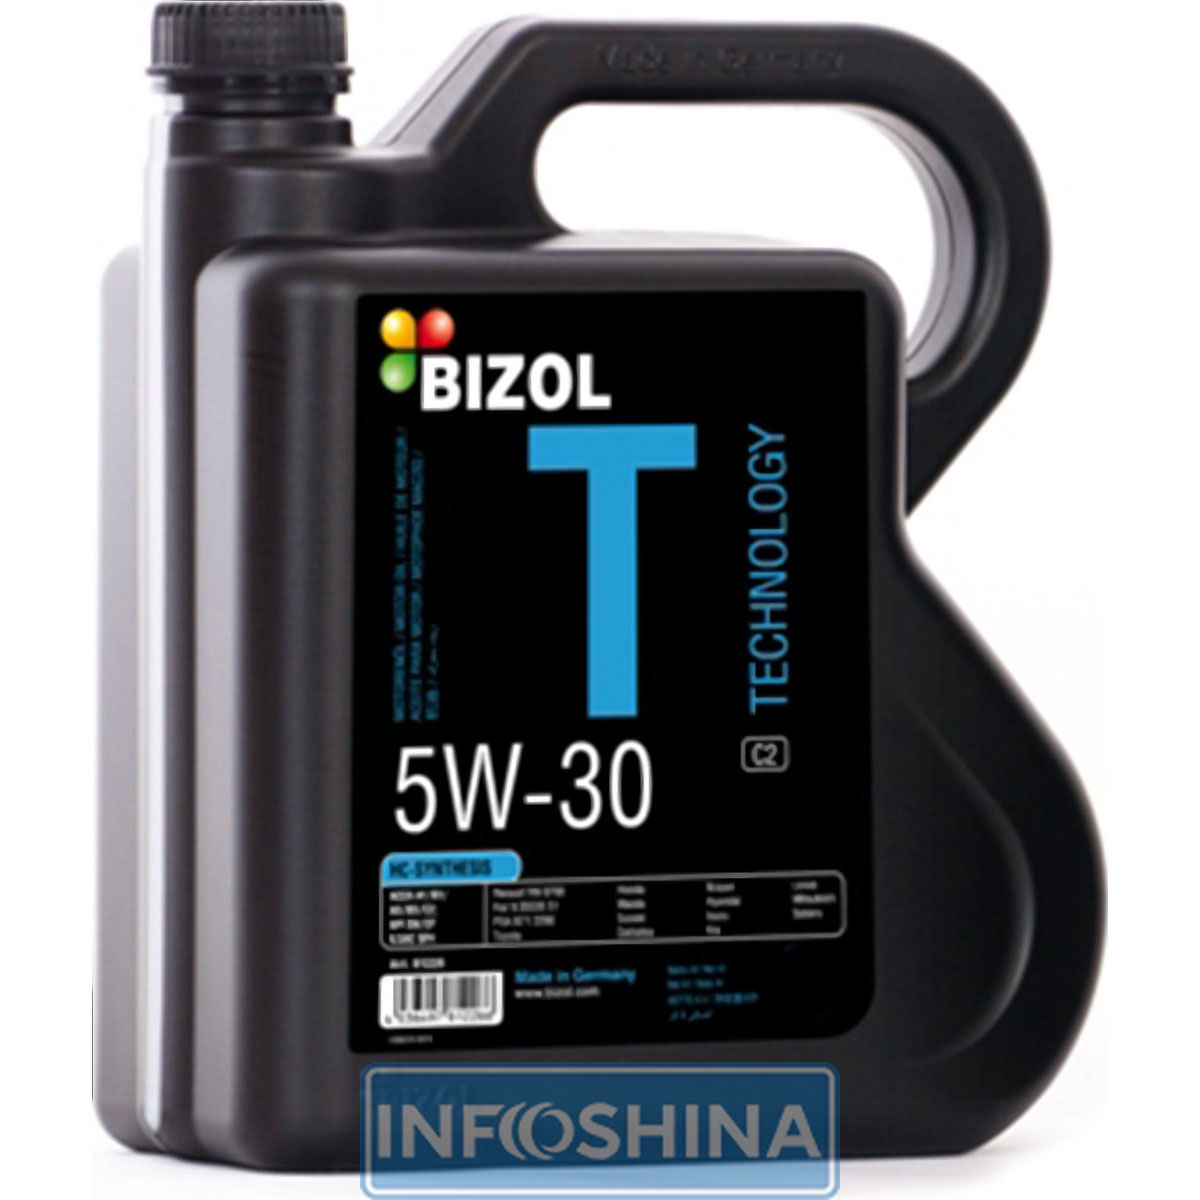 Bizol Technology 5W-30 507